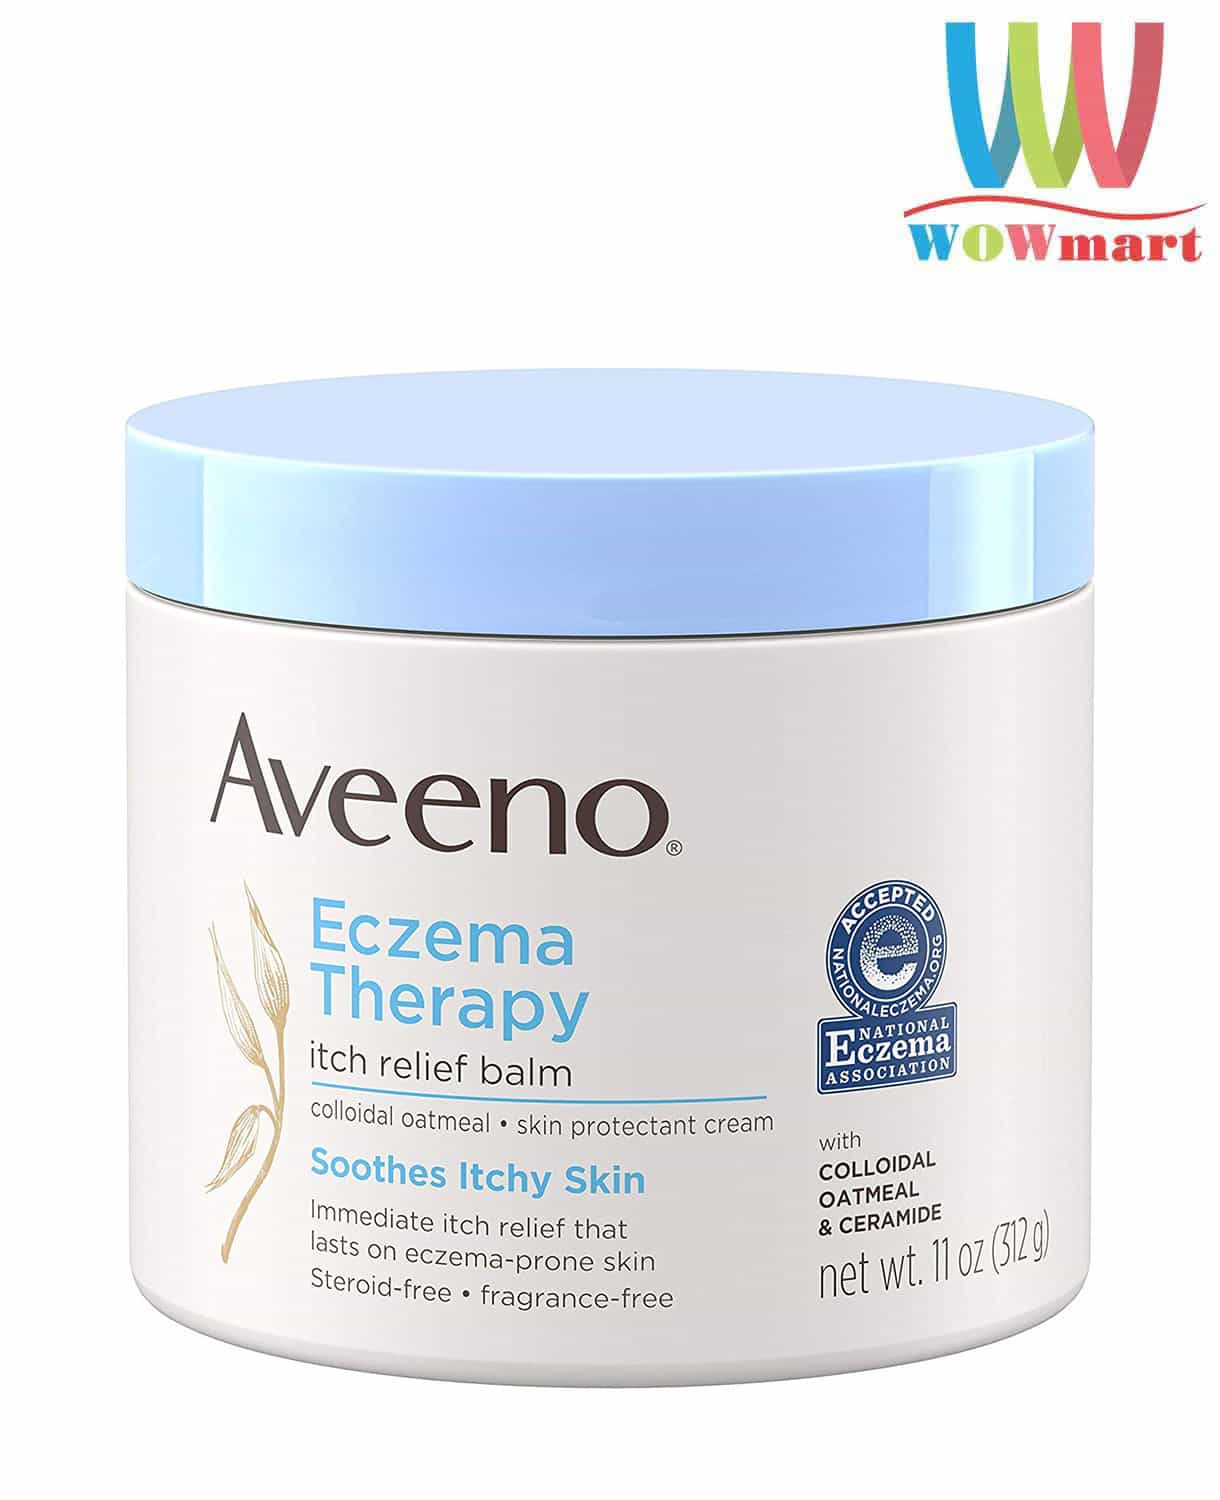 Tìm hiểu về sản phẩm aveeno eczema và lợi ích của chúng